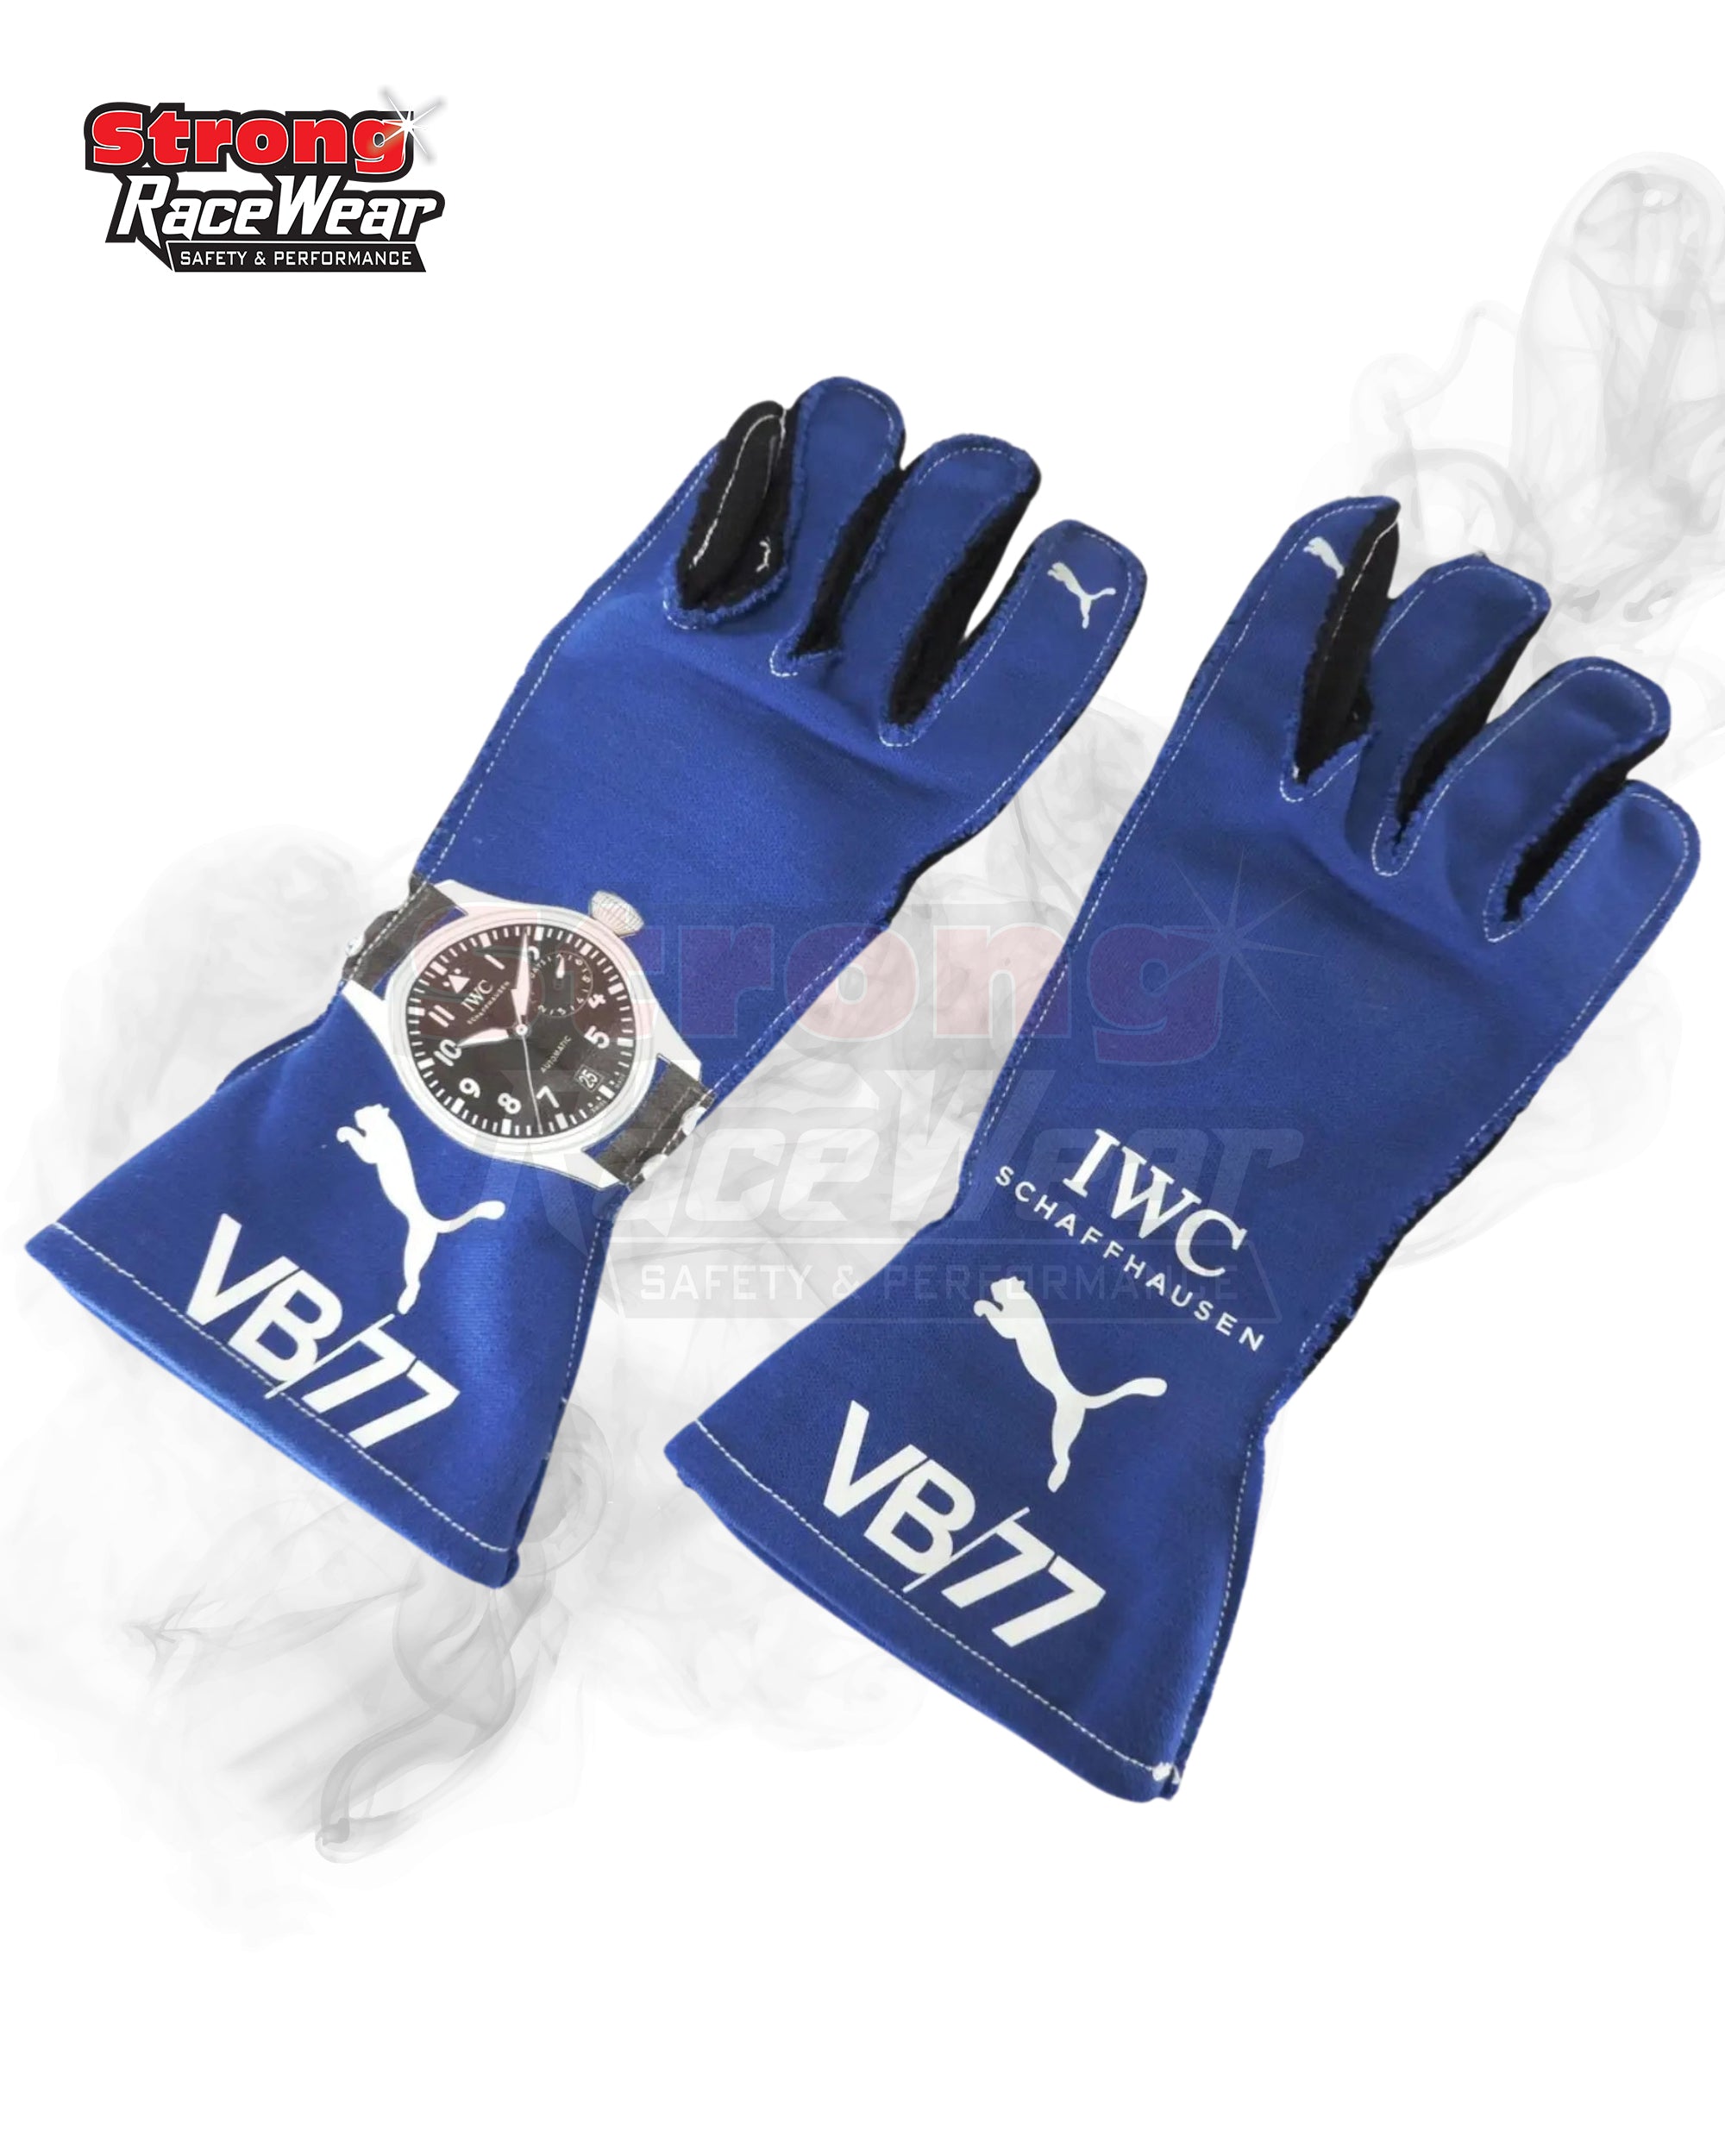 2018 Mercedes Formula One Valtteri Bottas Race Gloves